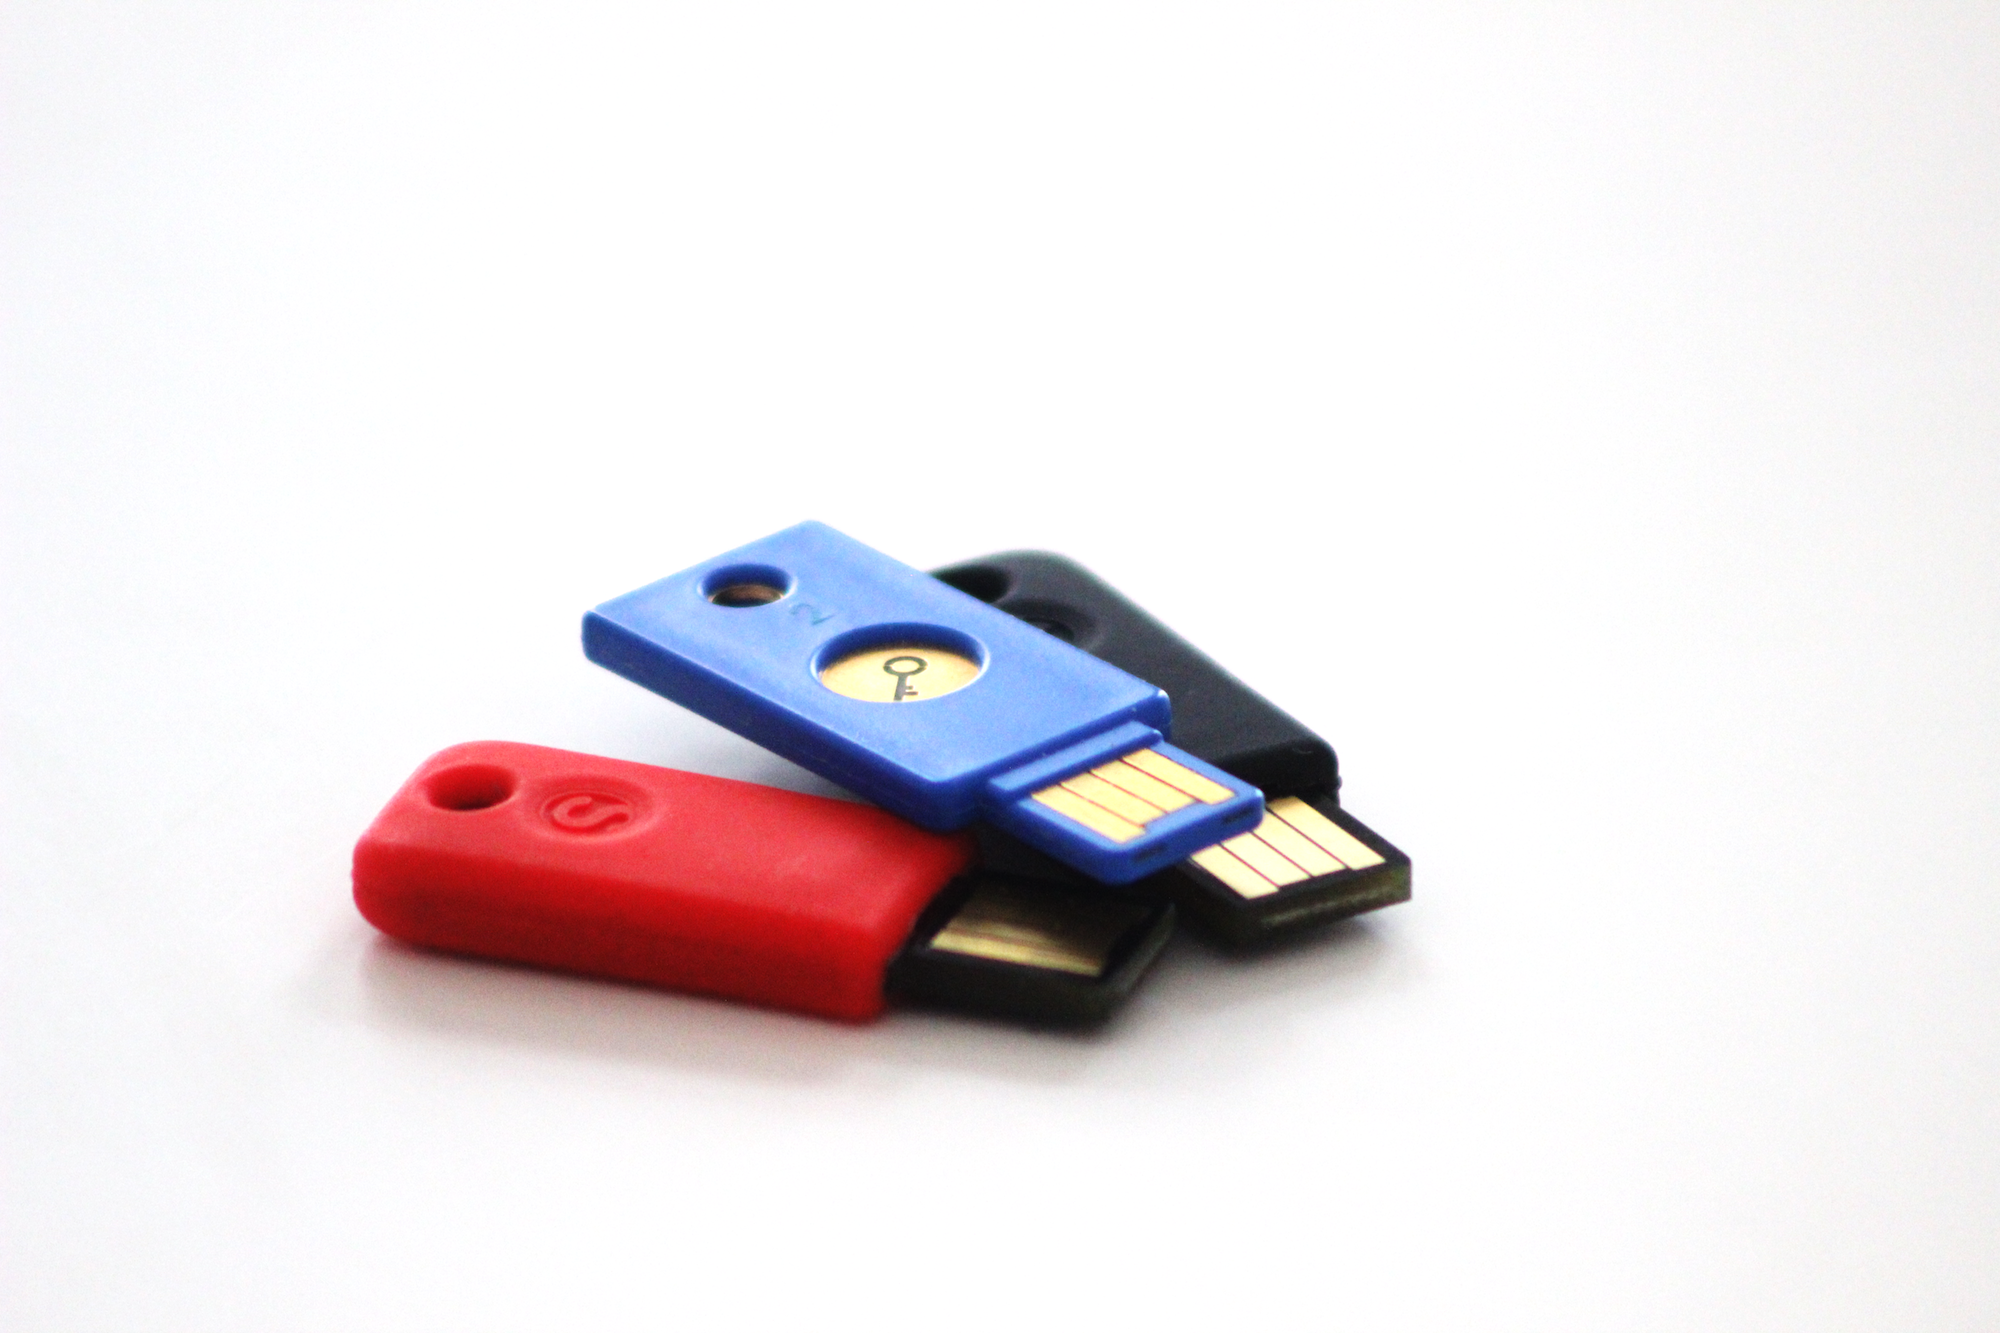 Roter schwarzer und blauer USB-Stick vor weißem Hintergrund